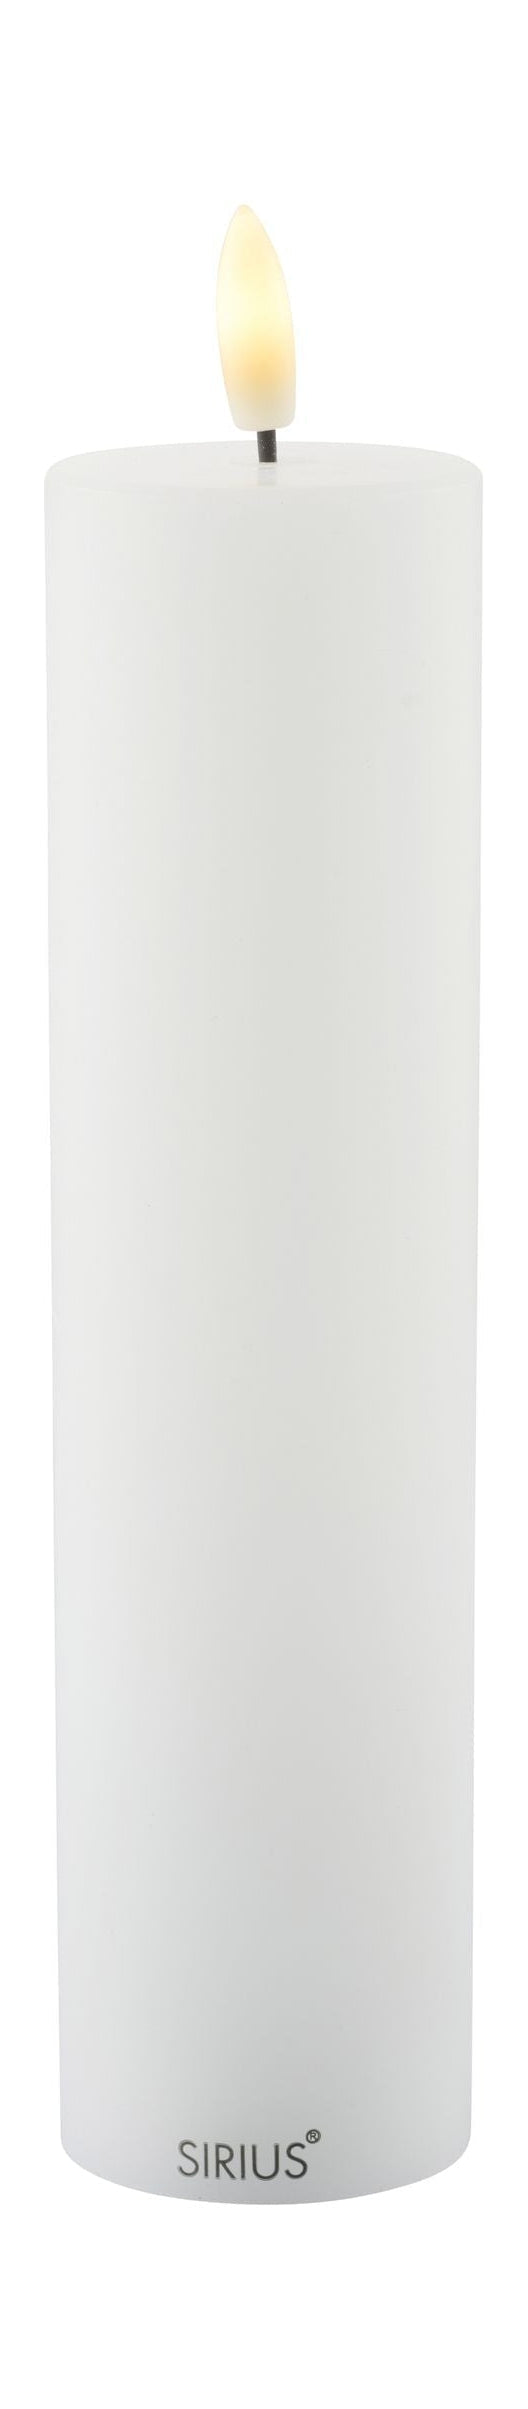 Sirius Sille ladattava LED -kynttilä valkoinen, Ø5x H20 cm